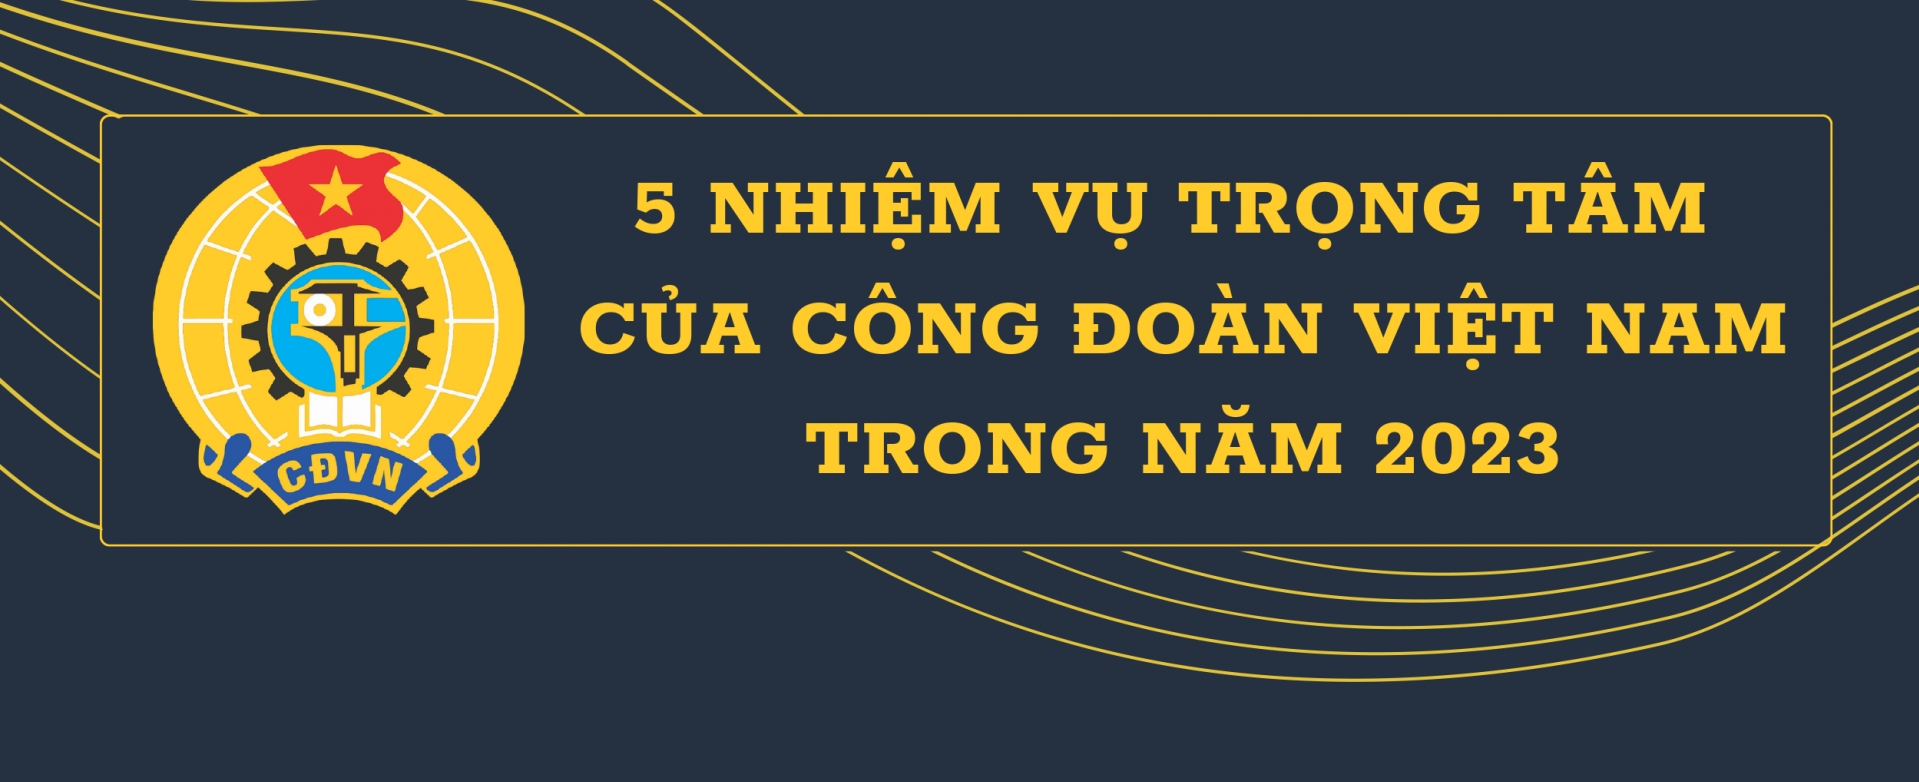 5 nhiệm vụ trọng tâm của Công đoàn Việt Nam trong năm 2023